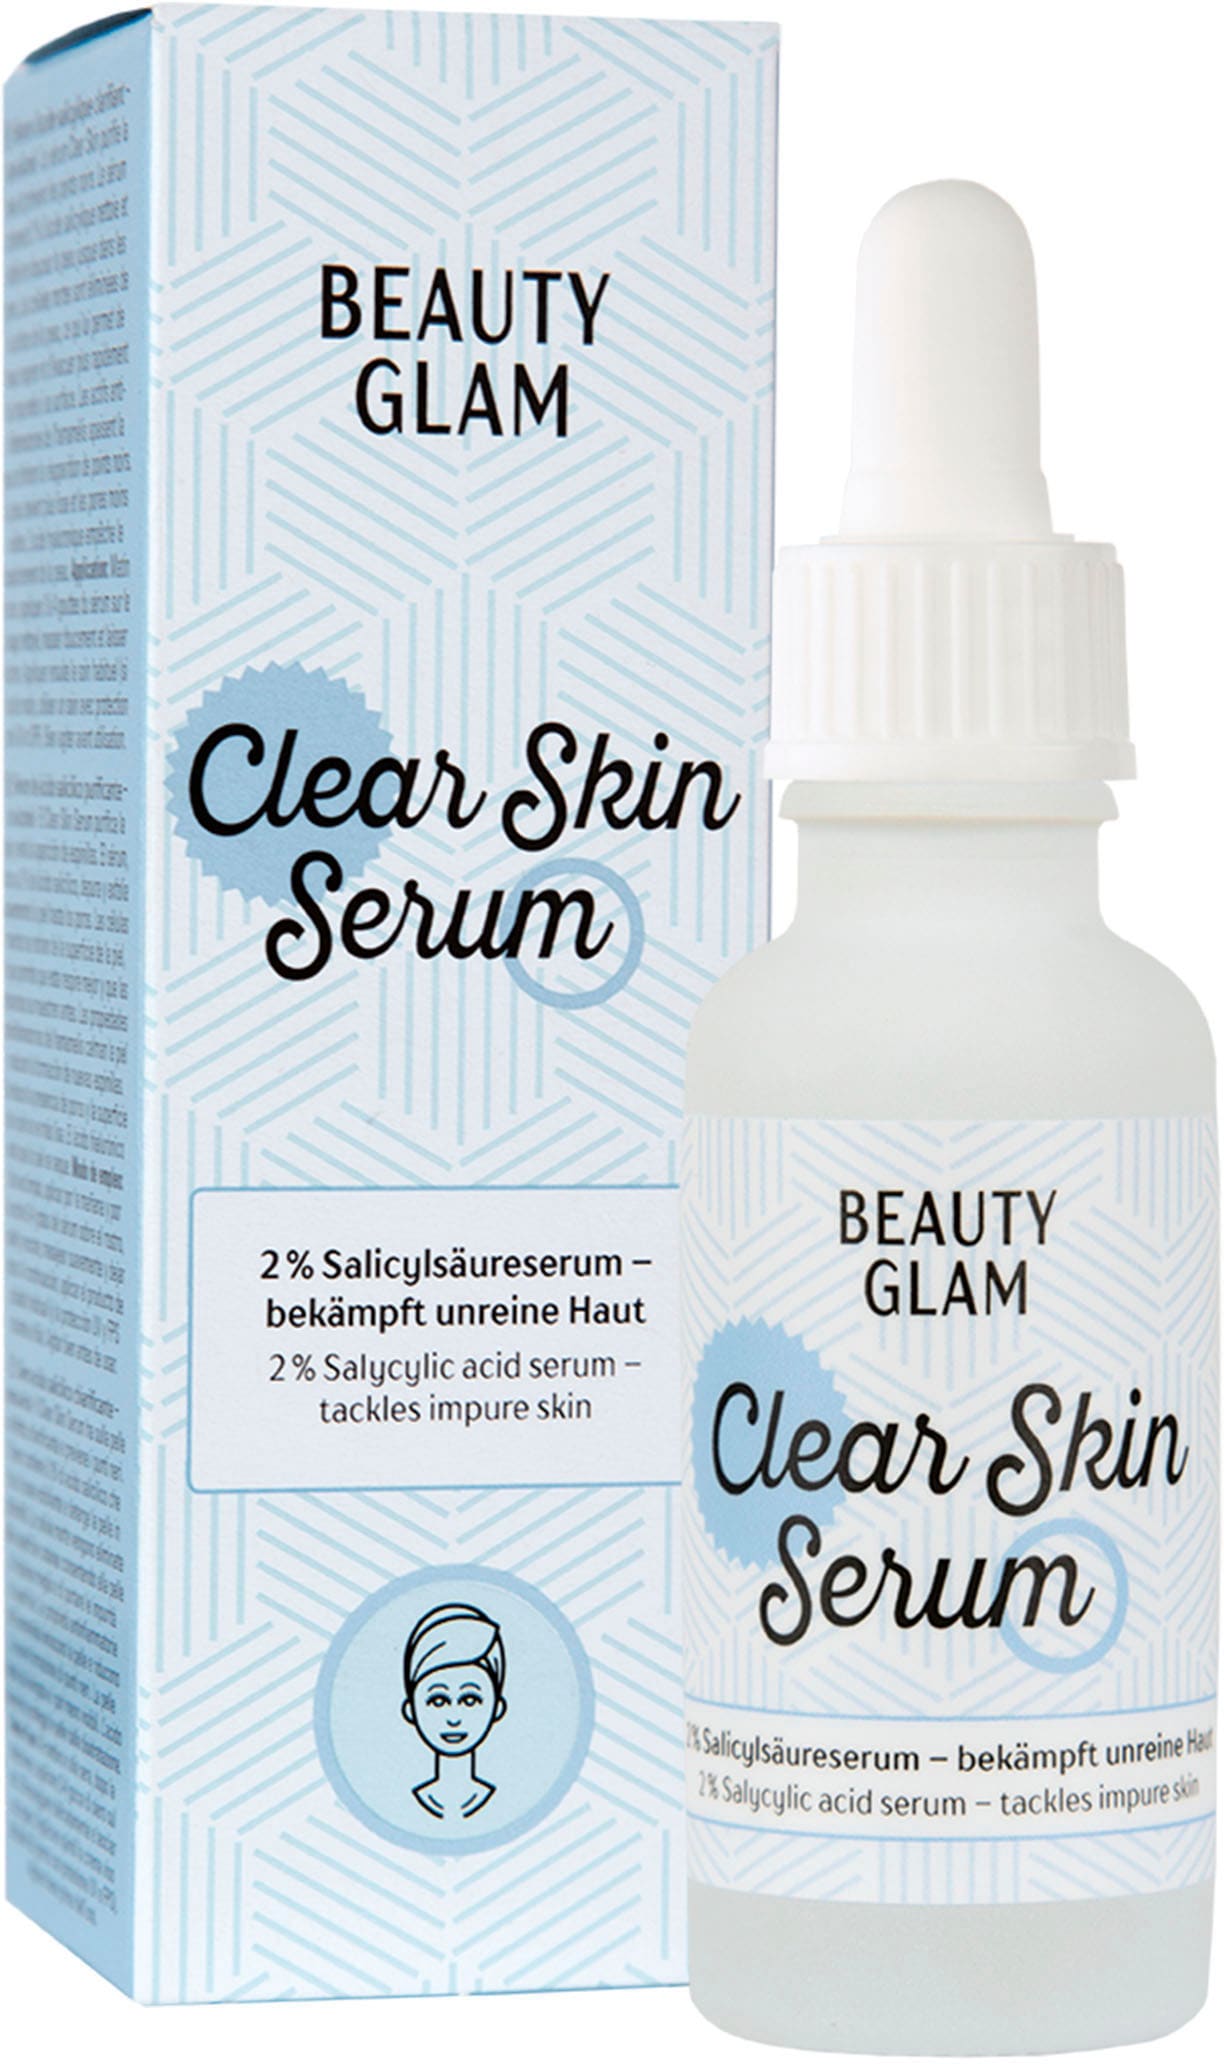 BEAUTY GLAM Online kaufen Glam Serum« OTTO Gesichtsserum im Skin Shop »Beauty Clear